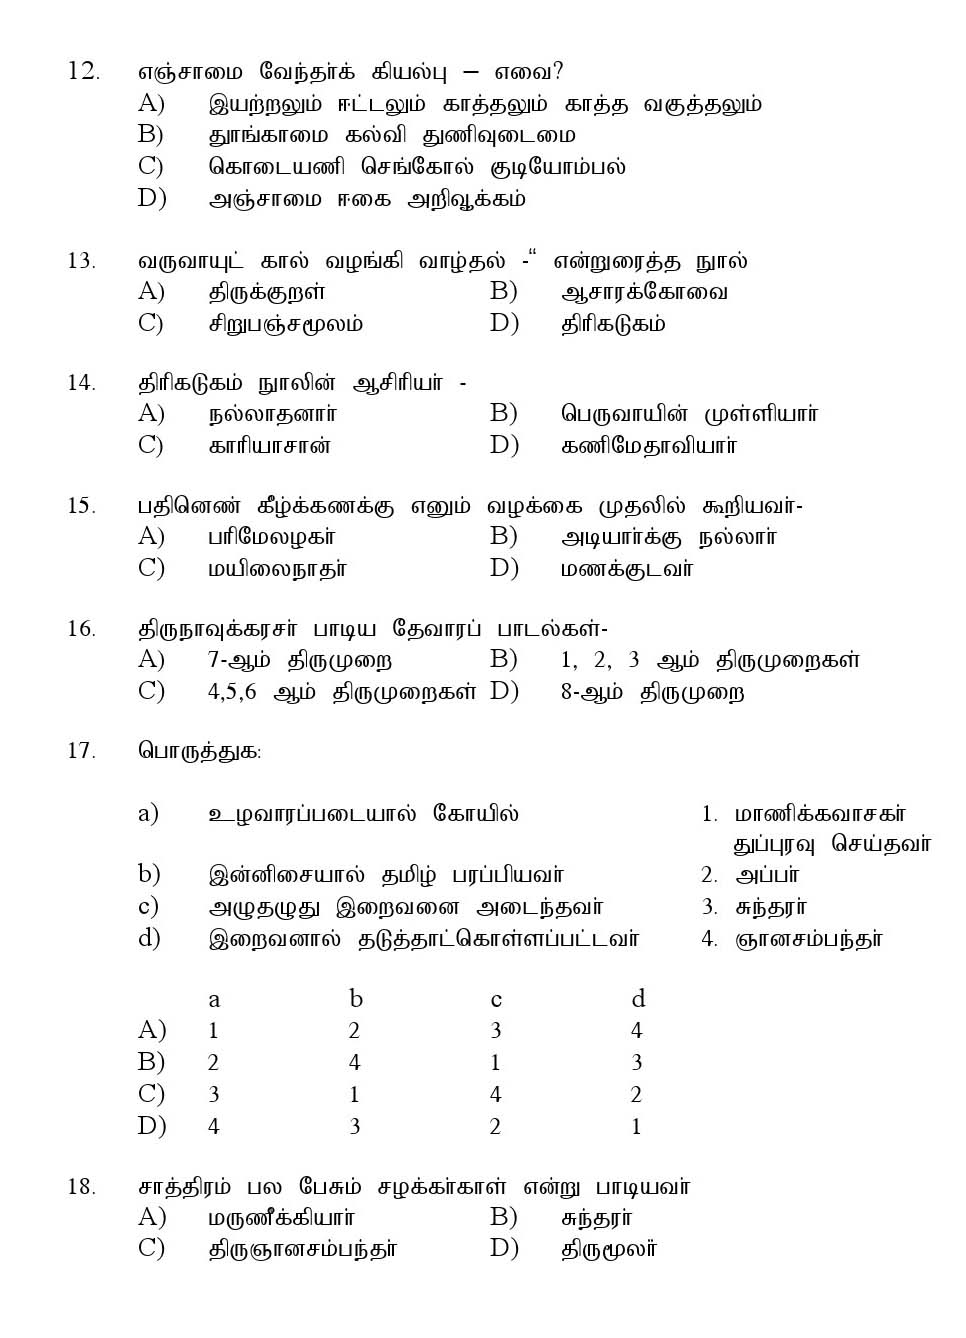 Kerala SET Tamil Exam 2016 Question Code 16633 A 3